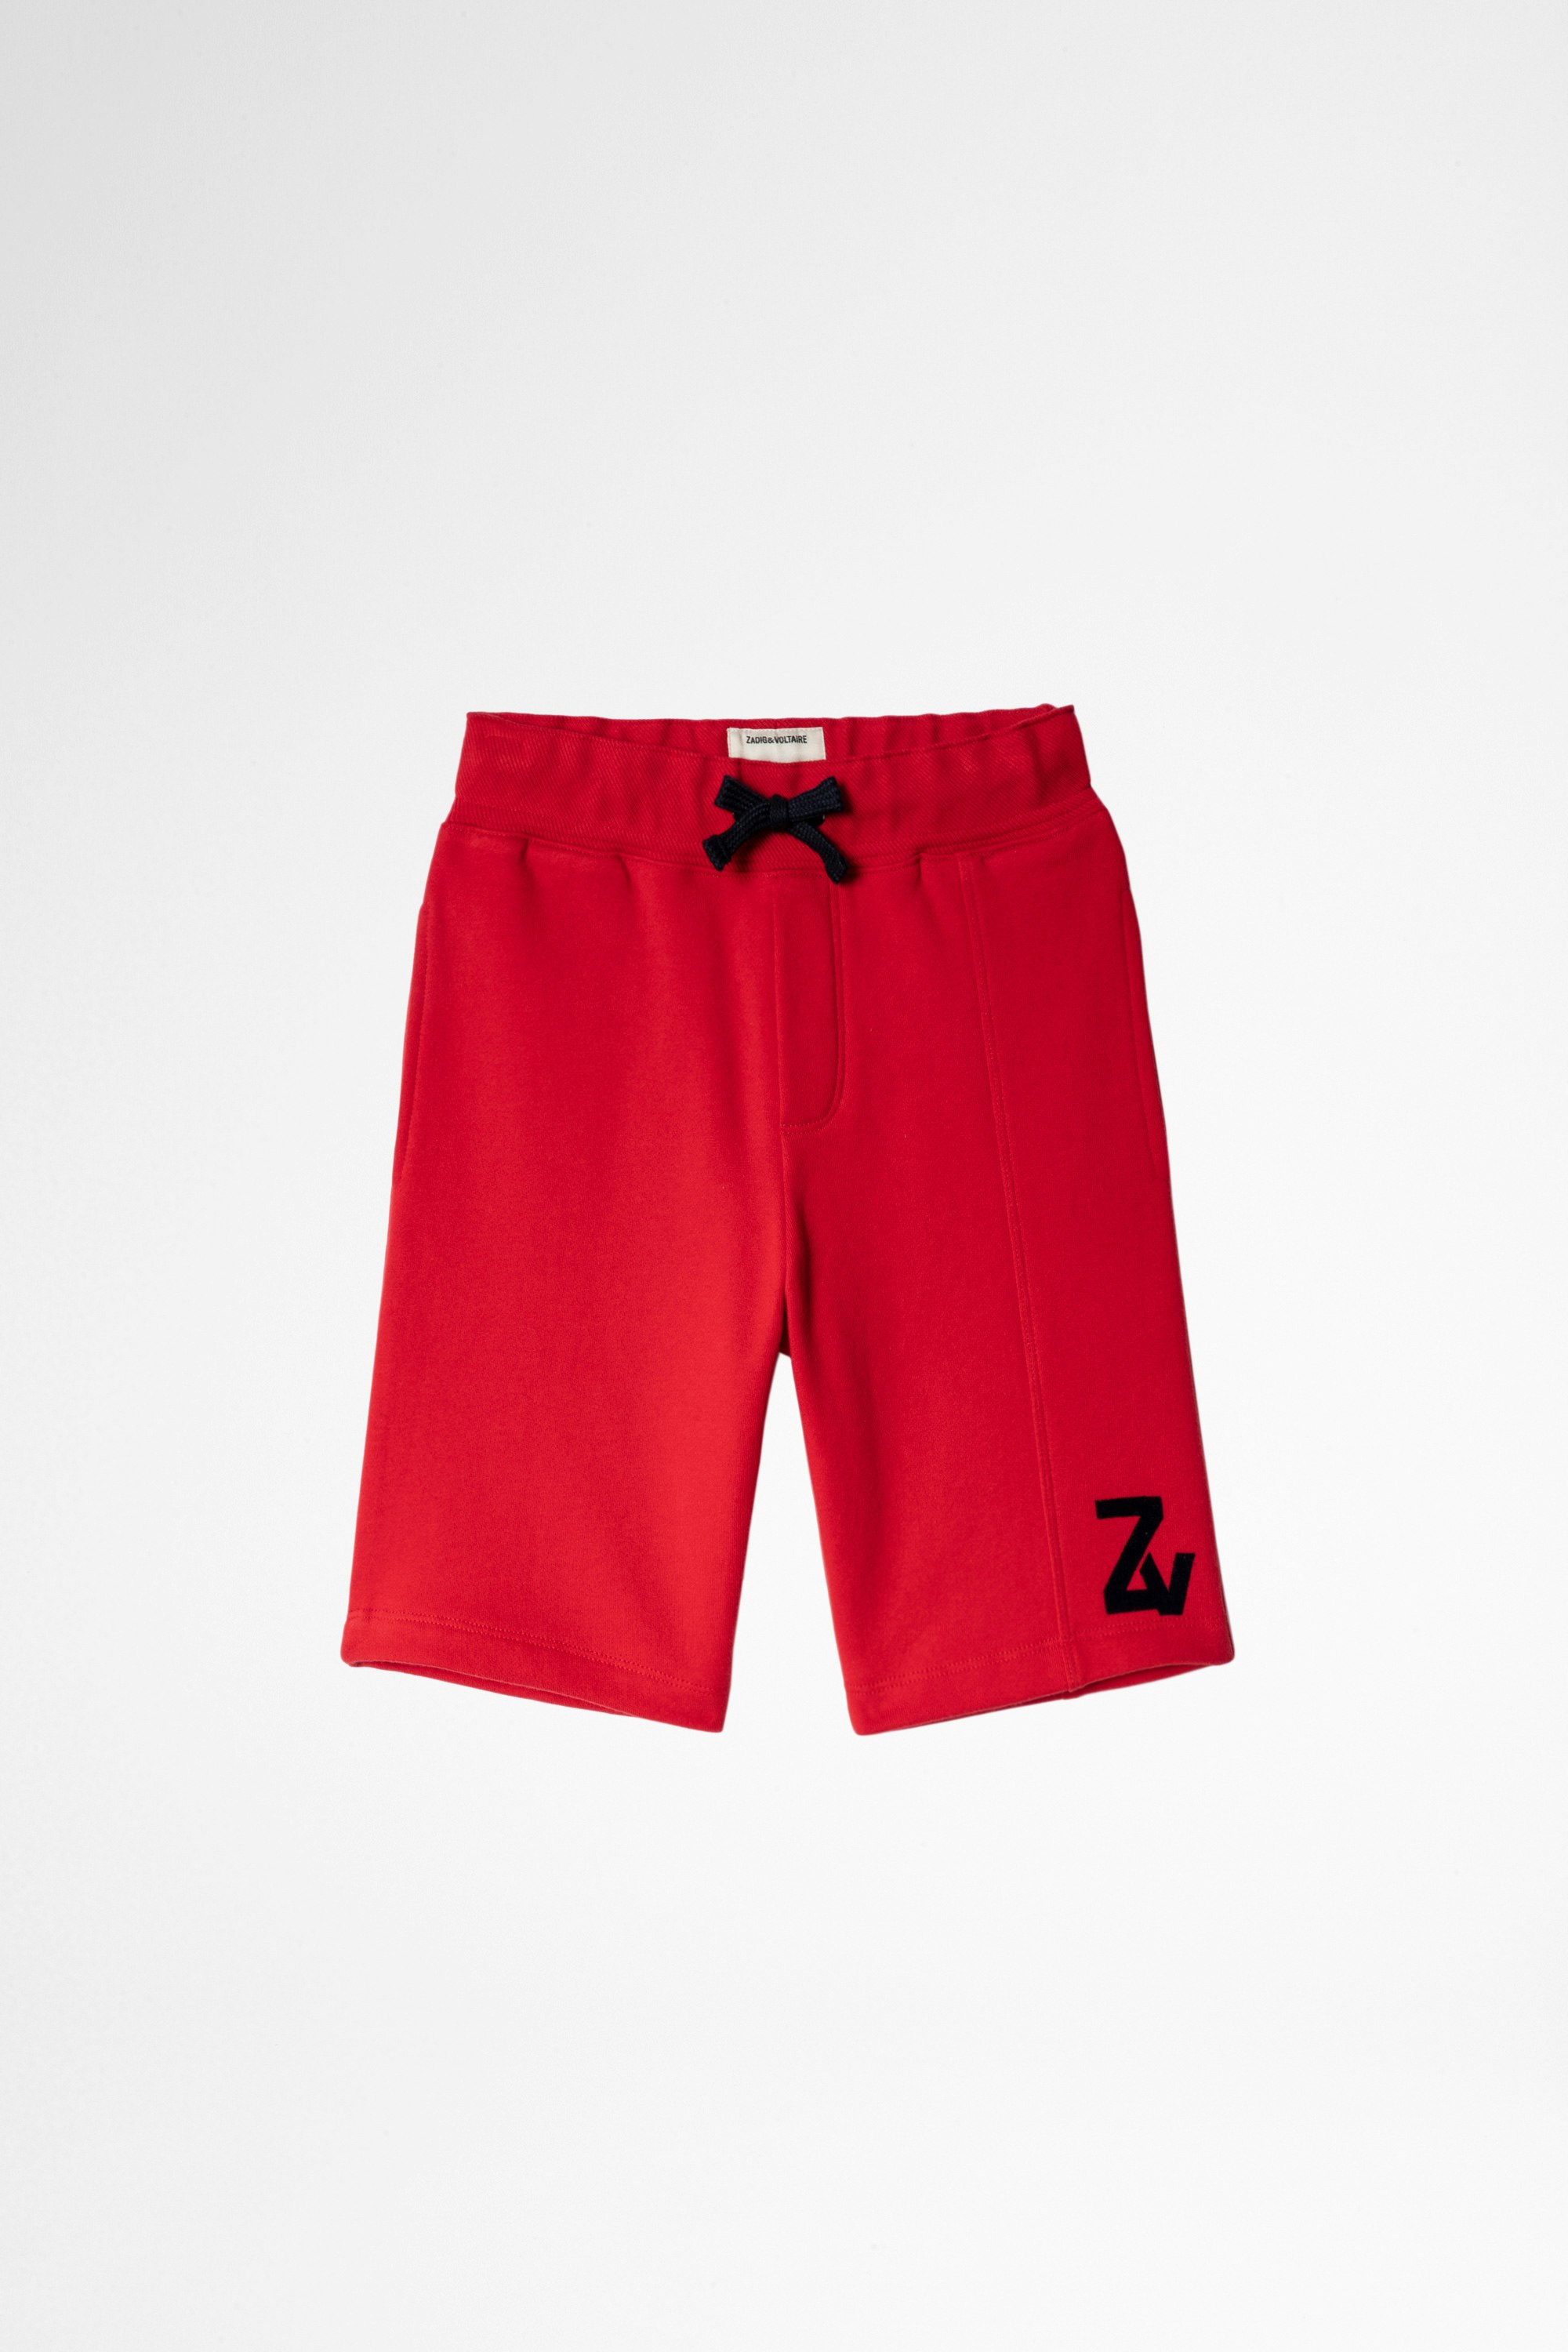 Hildana Children's ドレス Children's cotton Bermuda shorts in red